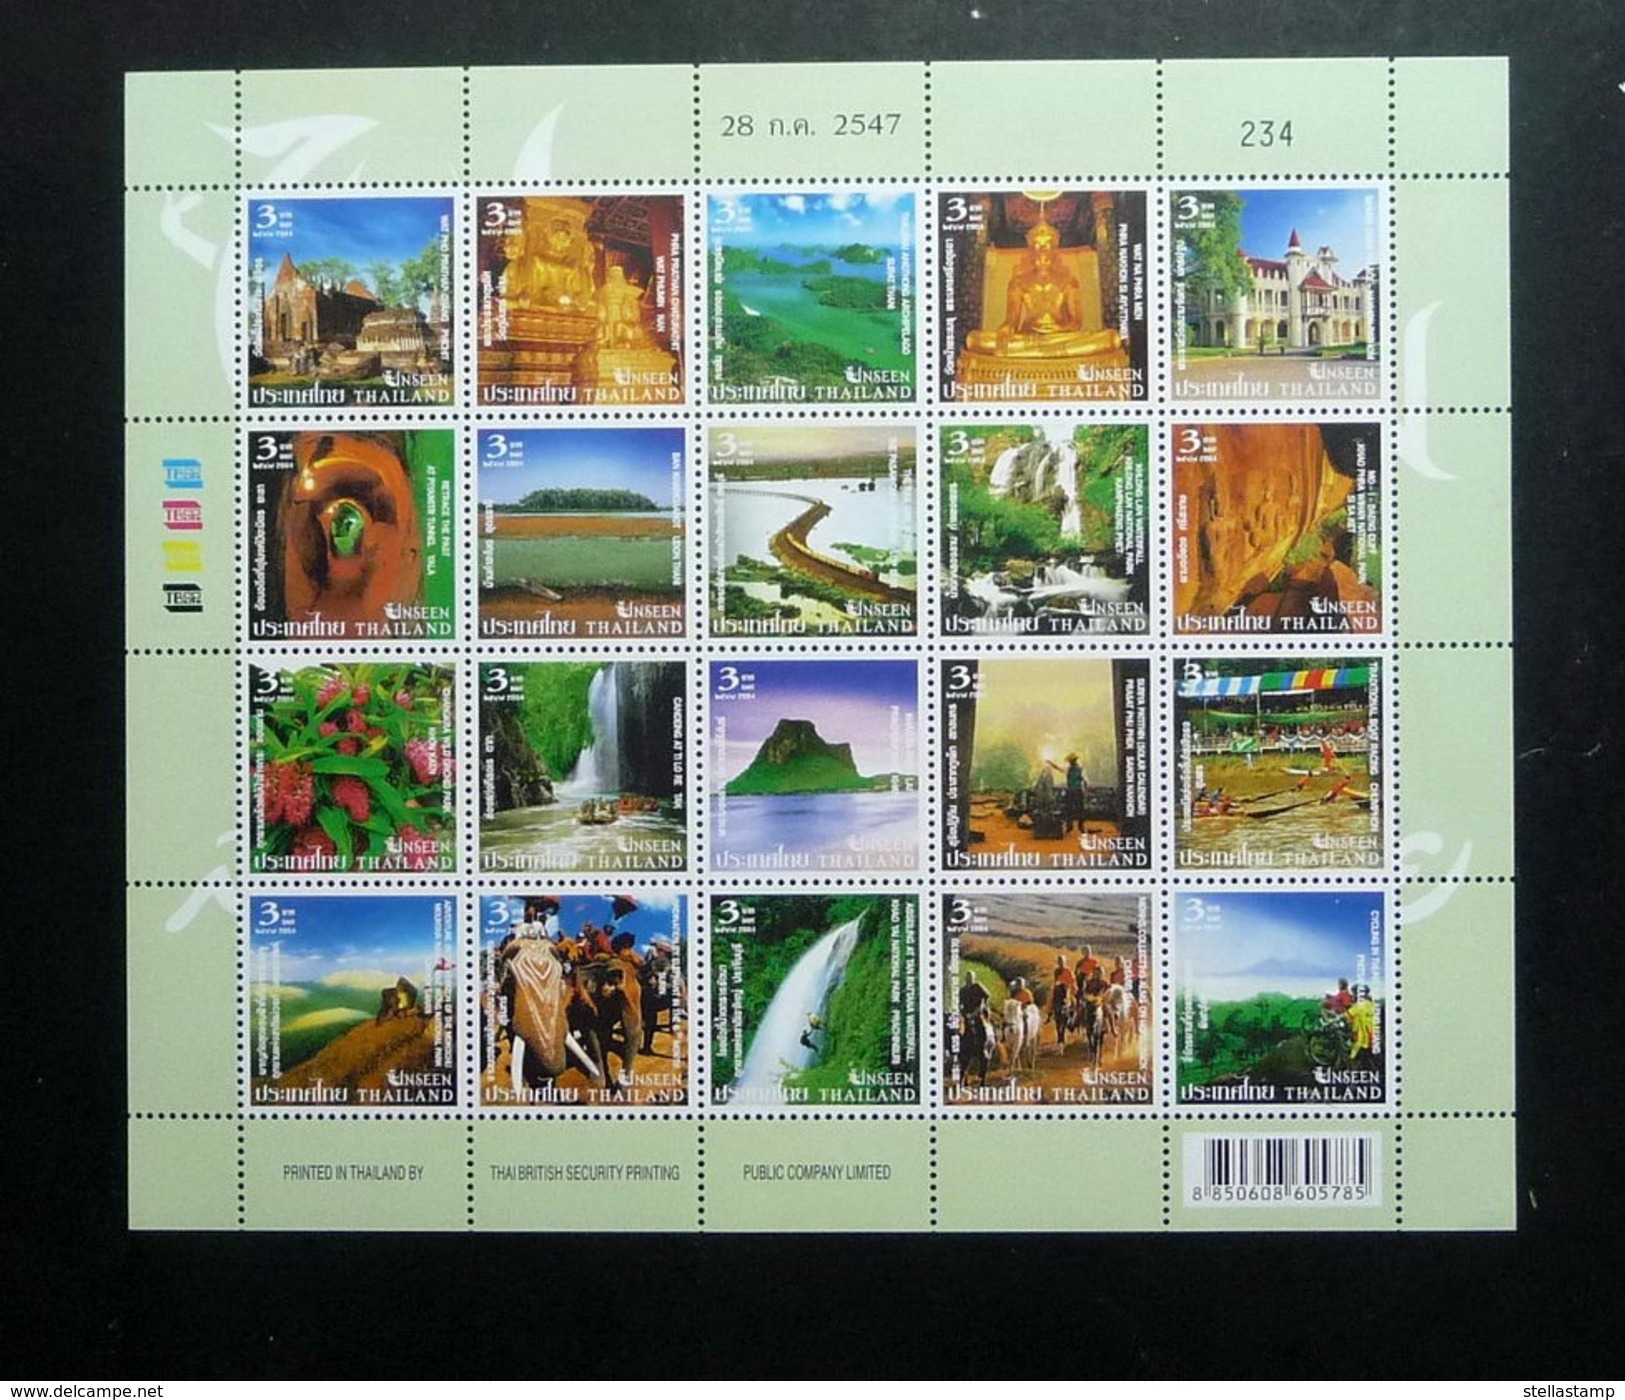 Thailand Stamp FS 2004 Unseen Thailand 2nd Series - Thaïlande